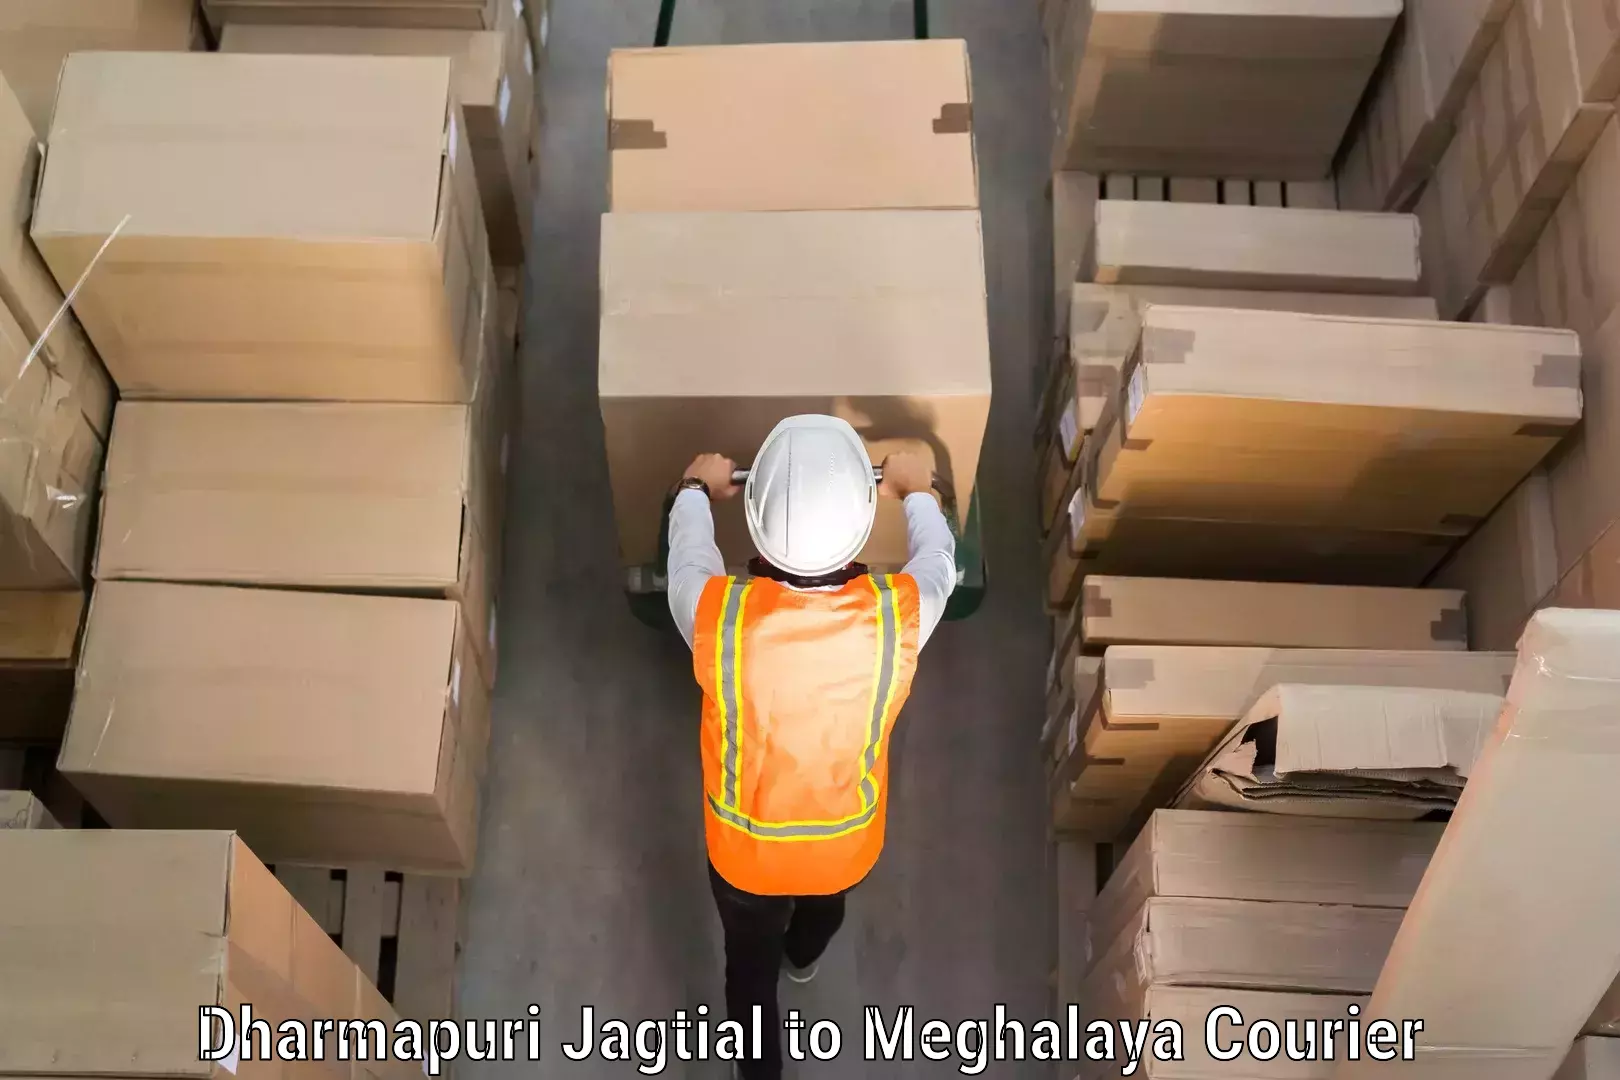 Door-to-door baggage service Dharmapuri Jagtial to Nongpoh